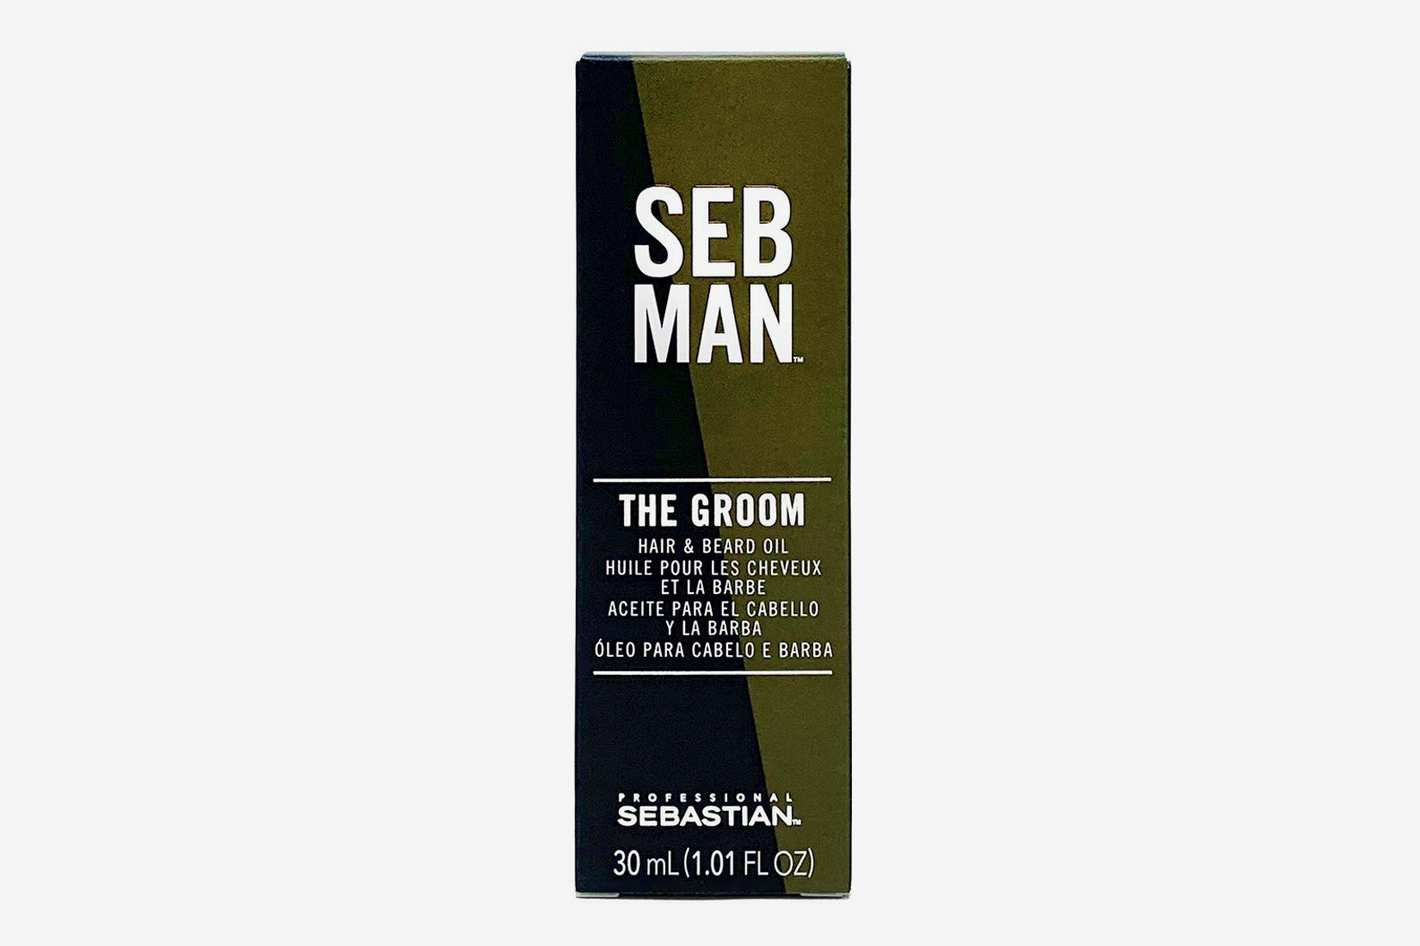 SEB MAN Sebastian's groom, barber oil and beard for men